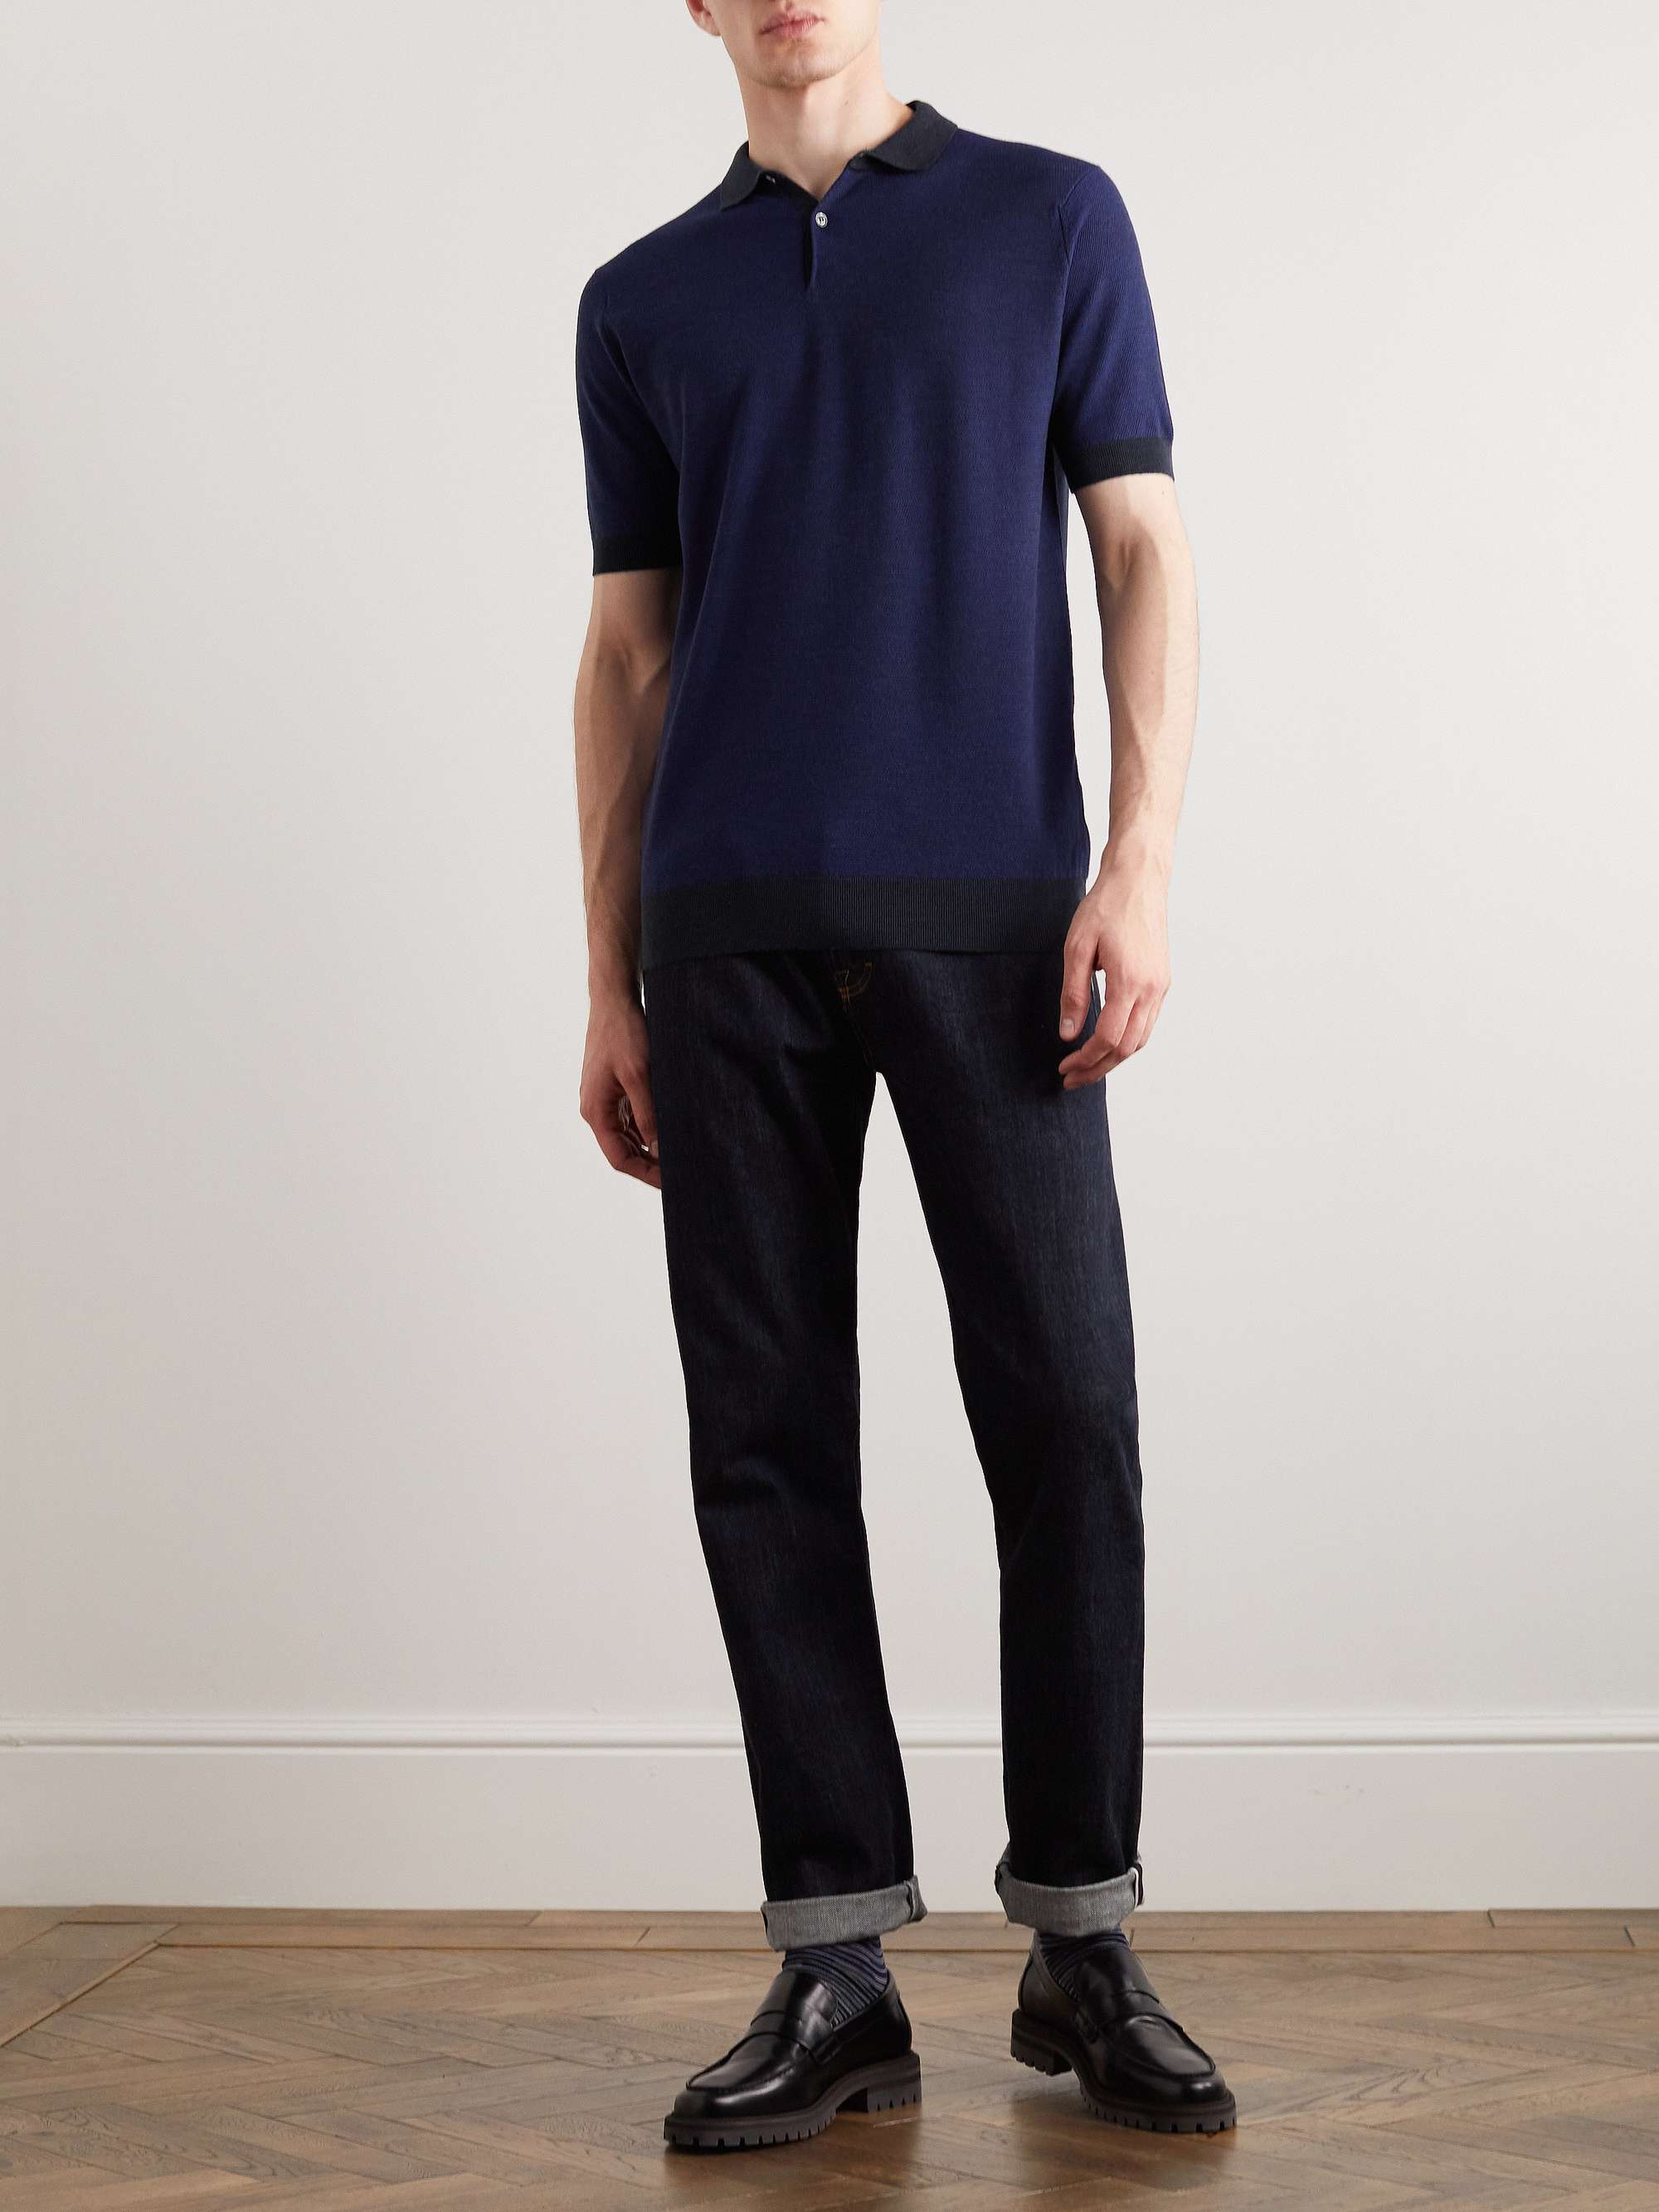 JOHN SMEDLEY Slim-Fit Wool Polo Shirt for Men | MR PORTER